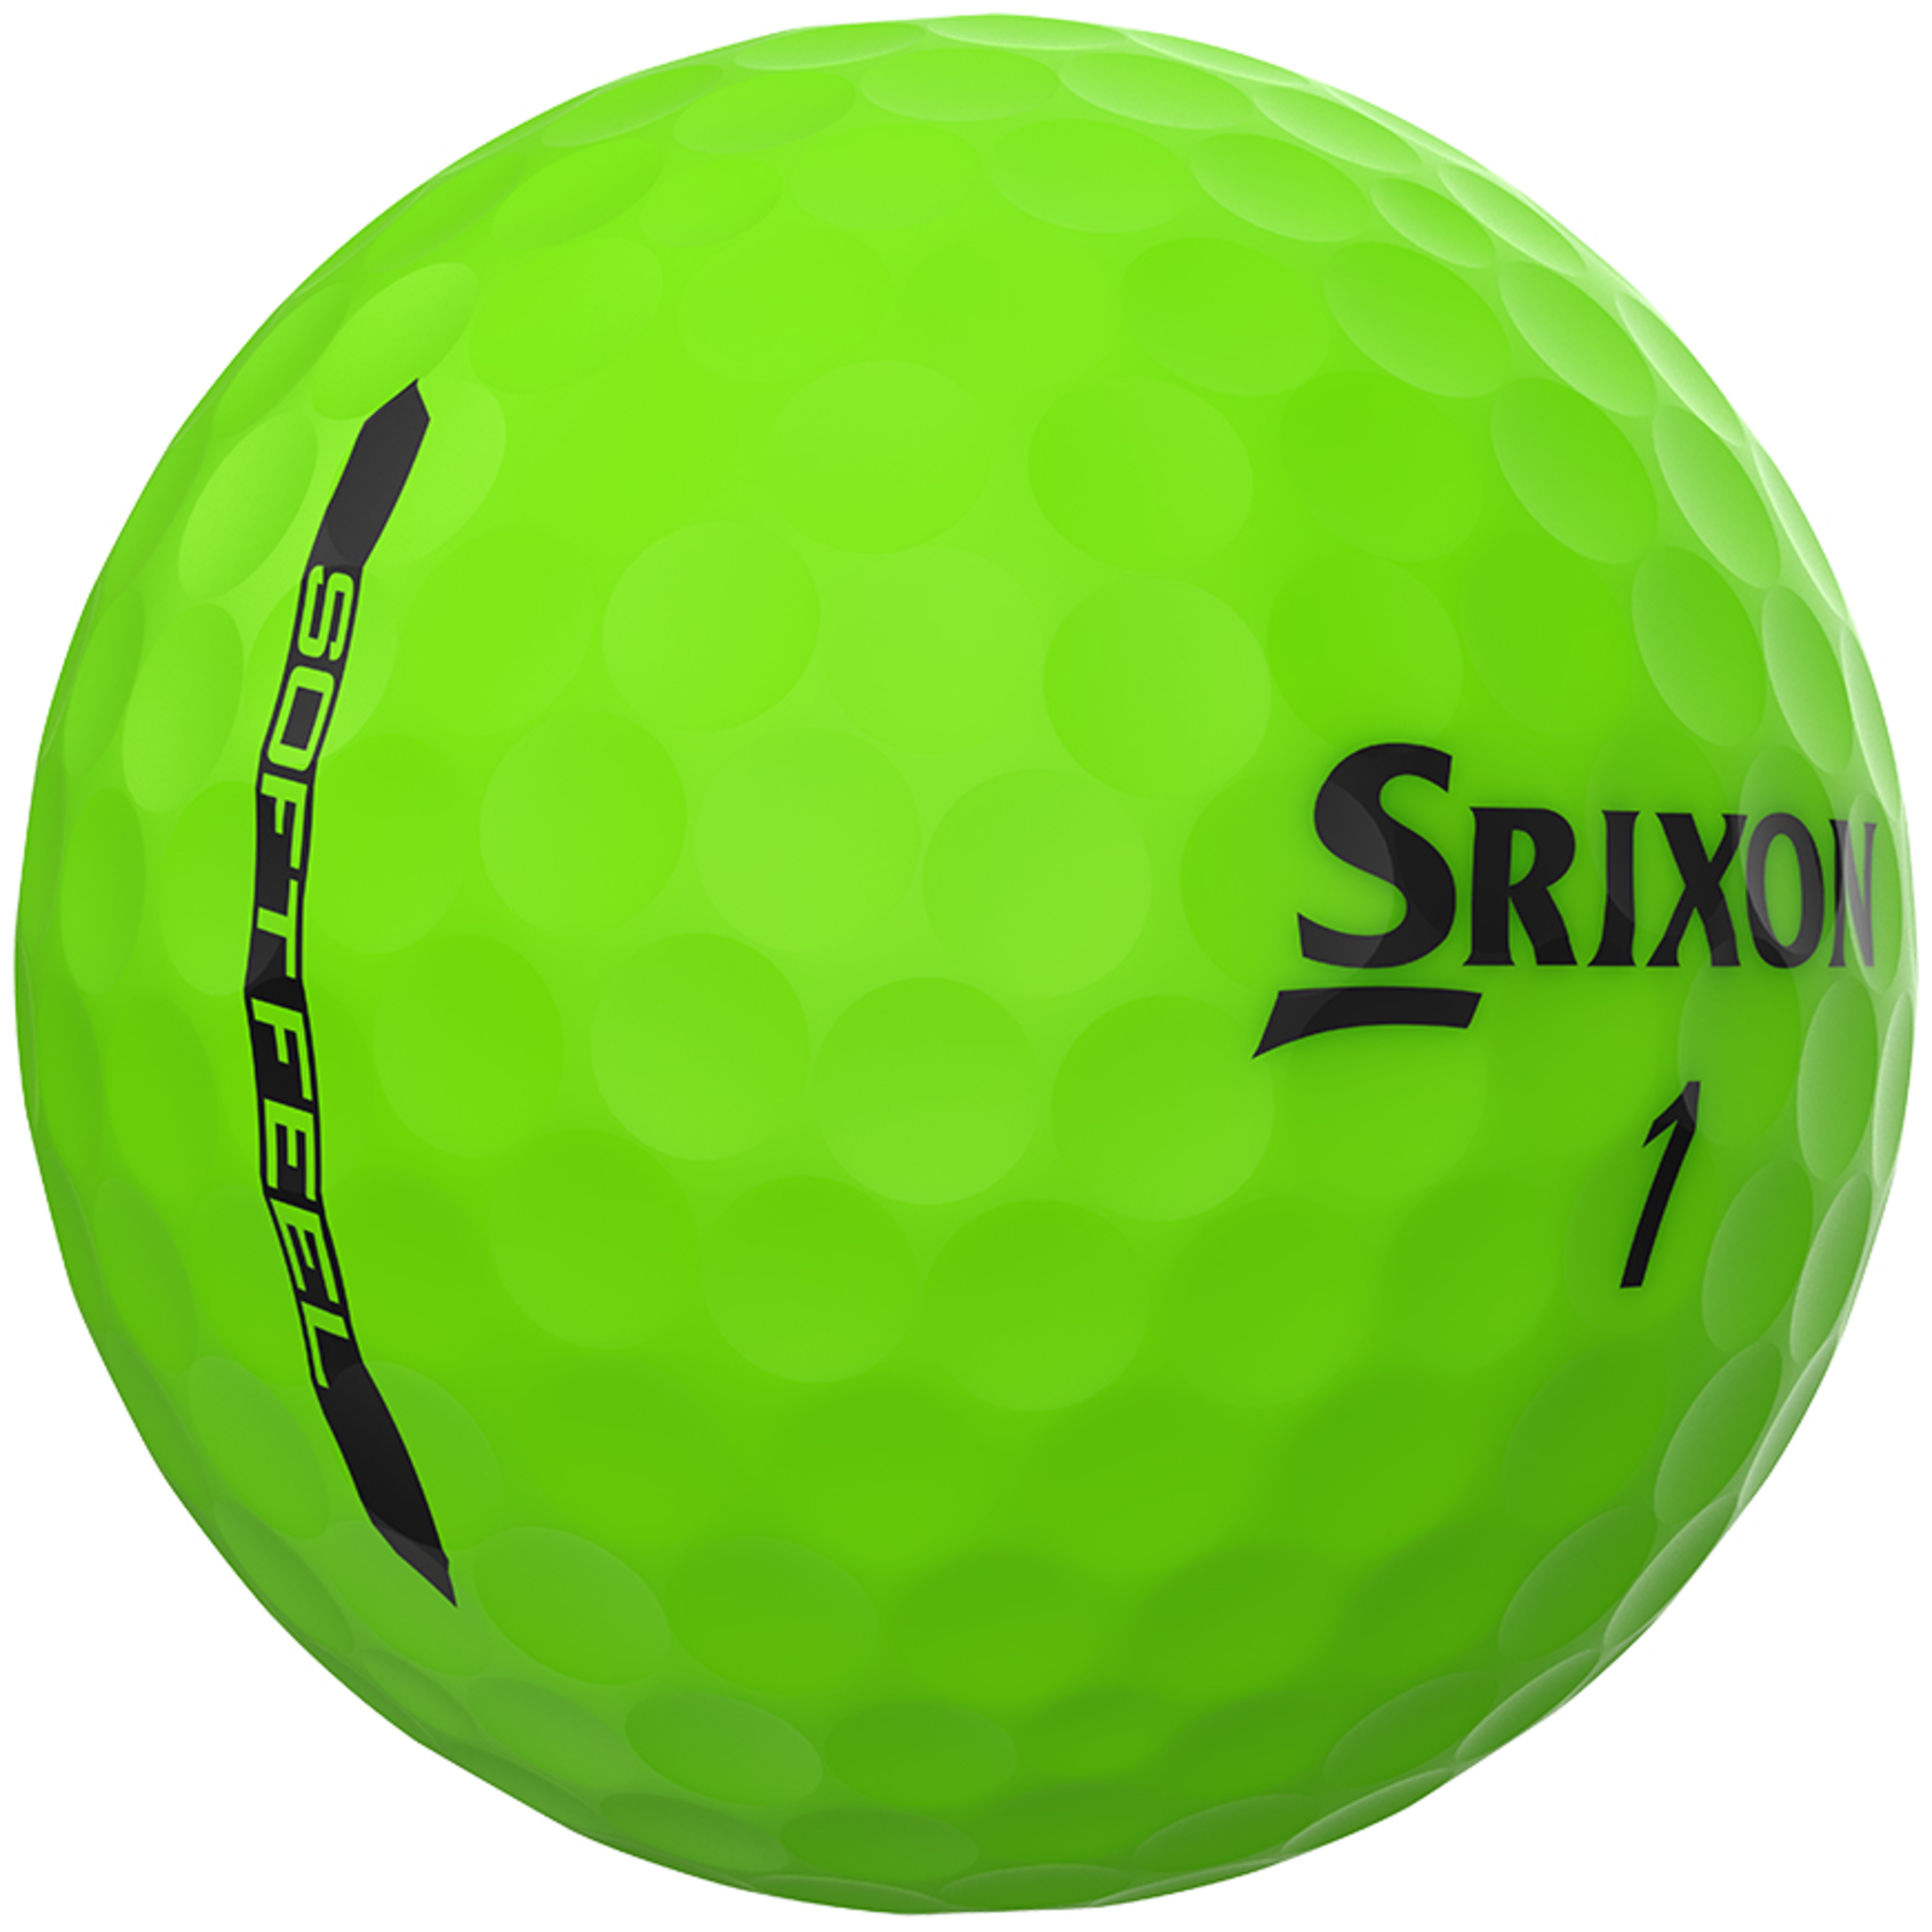 Soft Feel Brite - Verde - A sensação suave do Srxon está uma bola de distância. É recomendado para golfistas que tenham uma velocidade de balanço inferior a 160 km / h (160 km) | Sport Zone MKP